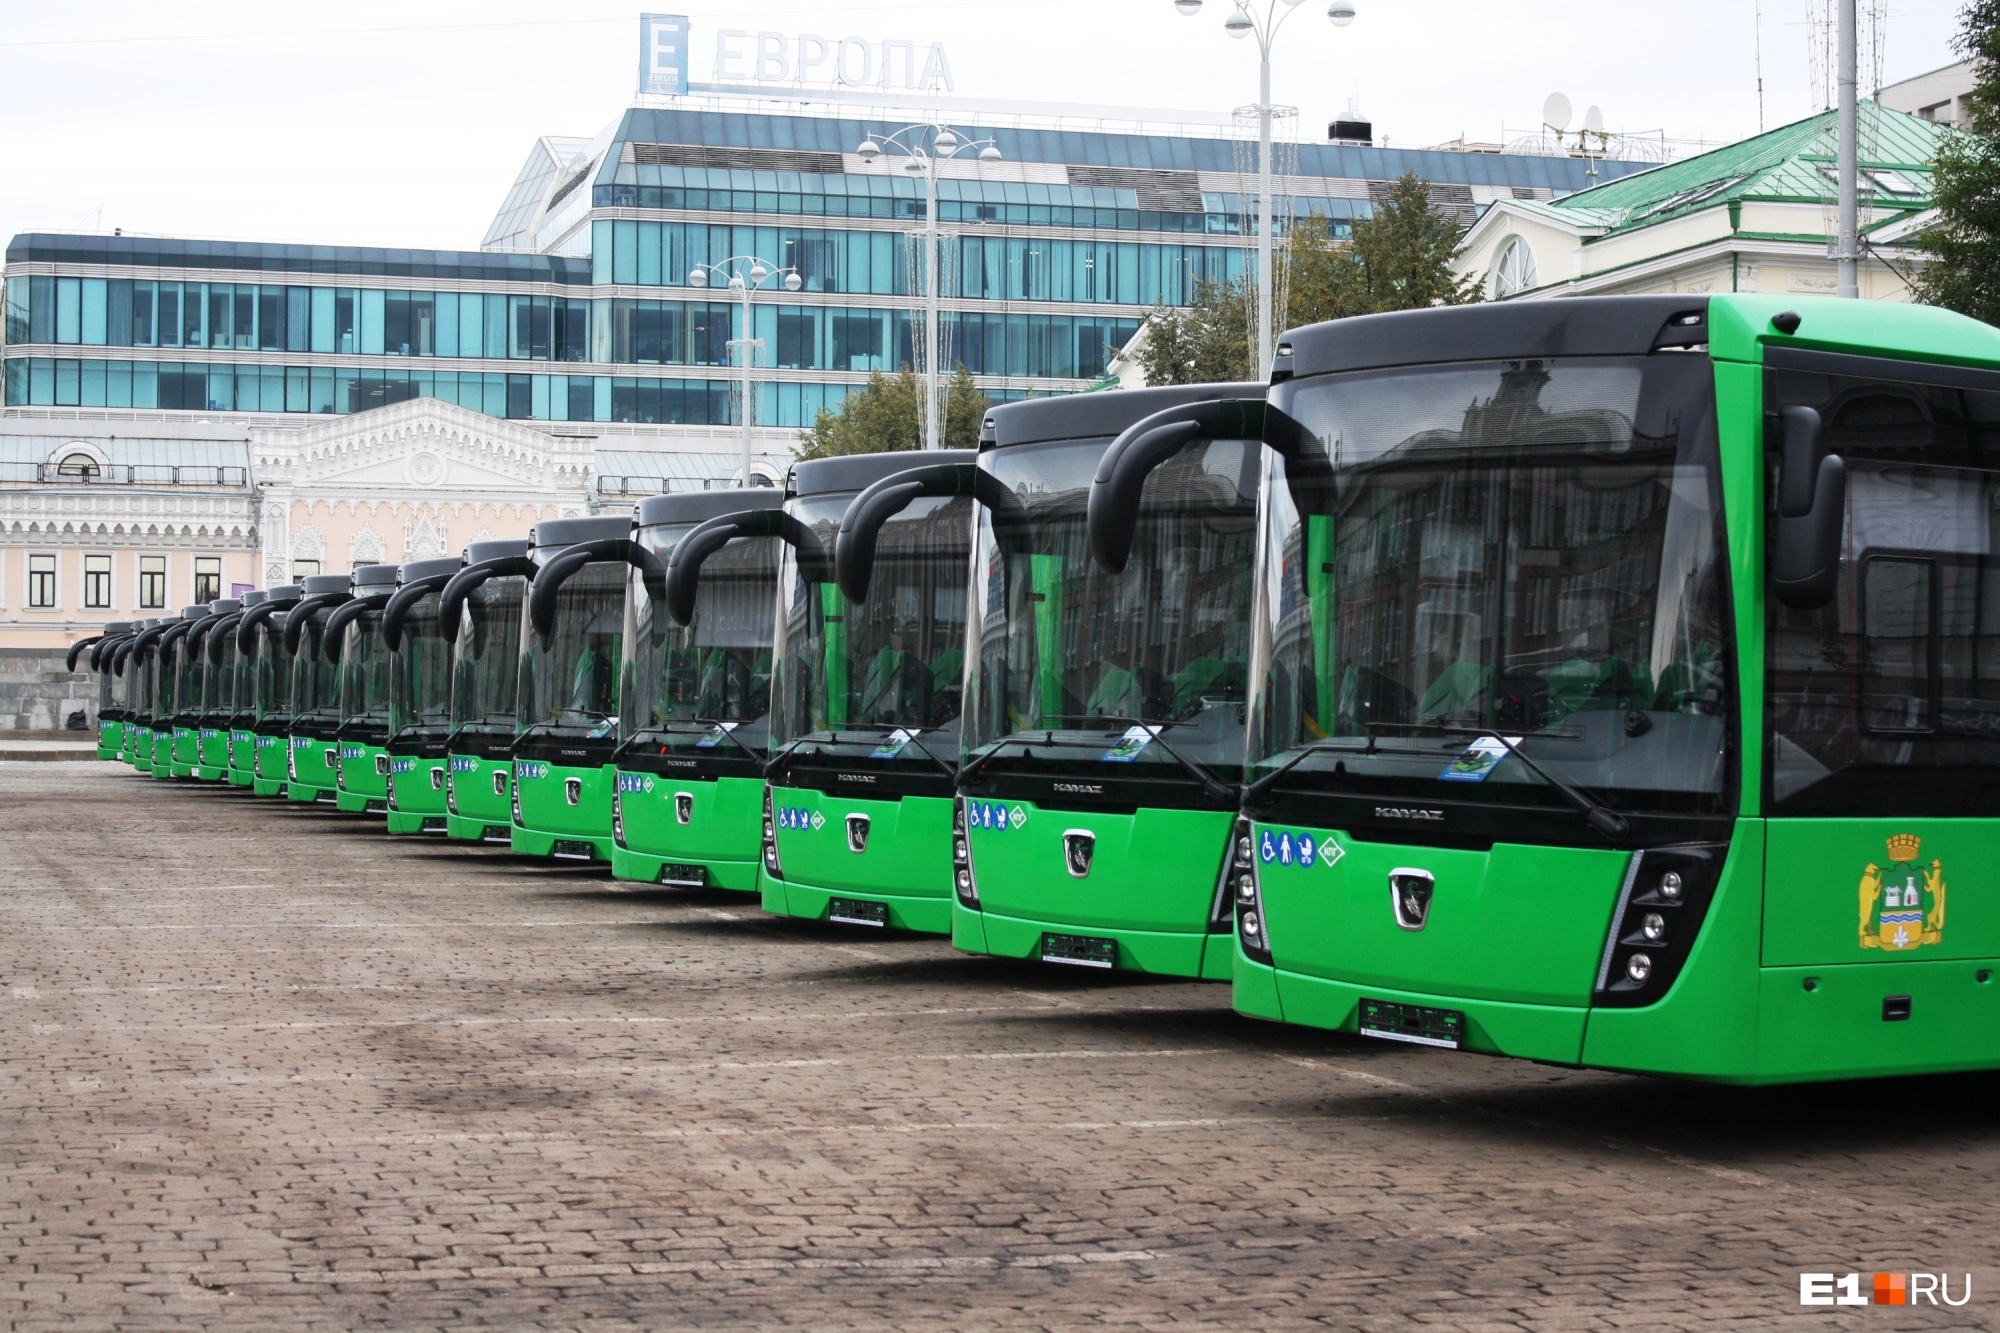 Екатеринбург получил еще 60 новых газовых автобусов с кондиционерами и бескондукторными валидаторами